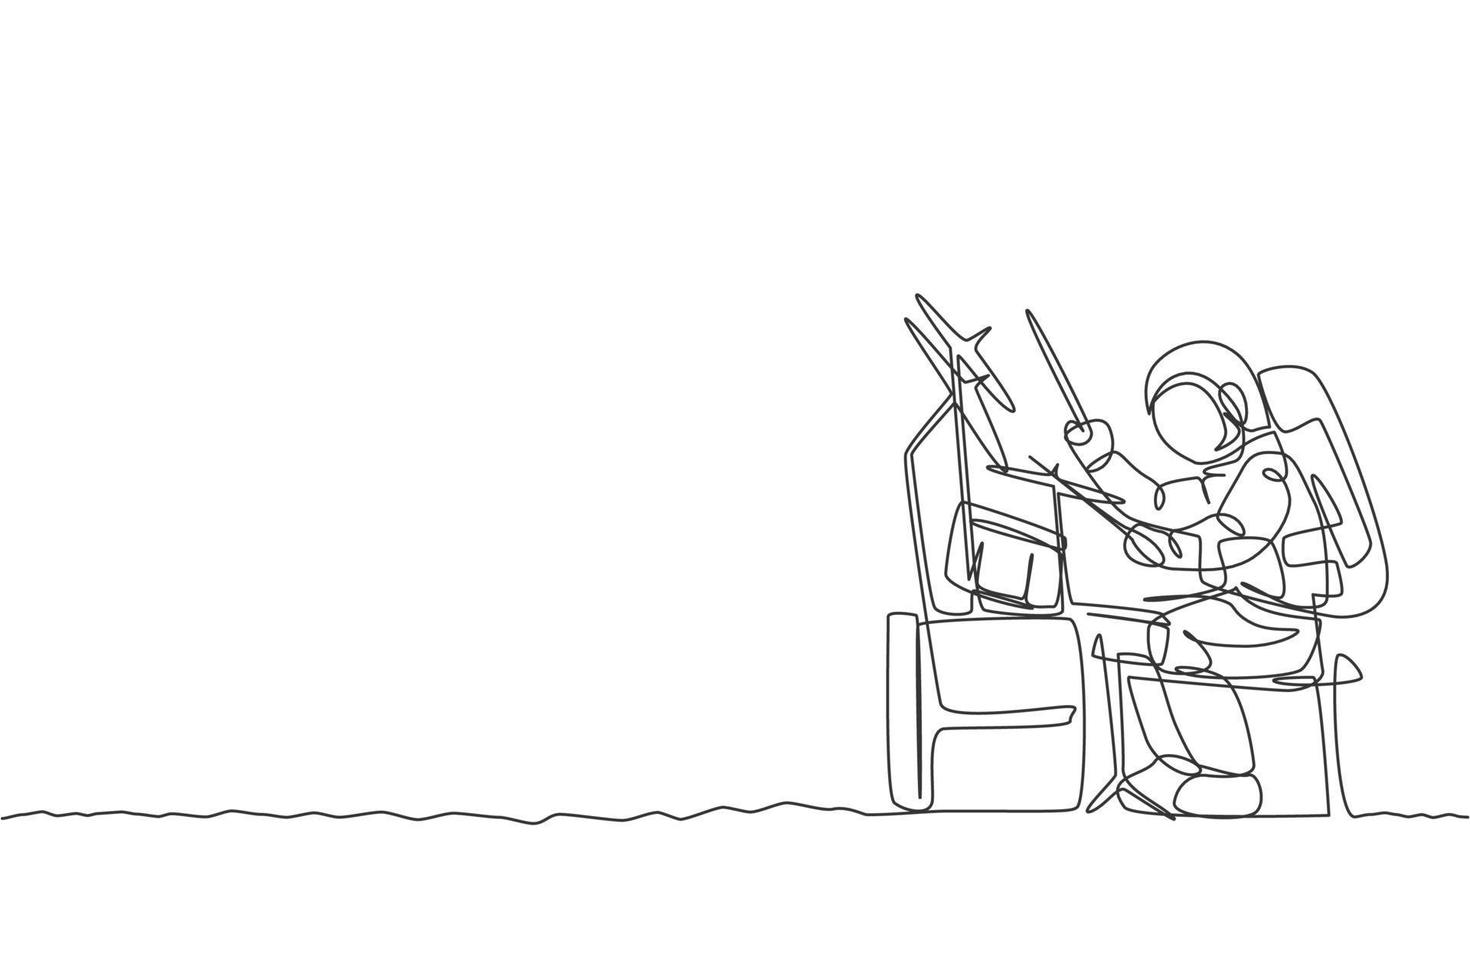 um desenho de linha única do baterista do astronauta tocando bateria instrumento musical na ilustração vetorial de superfície da lua. cartaz de concerto de música, conceito de astronauta espacial. design moderno de desenho de linha contínua vetor